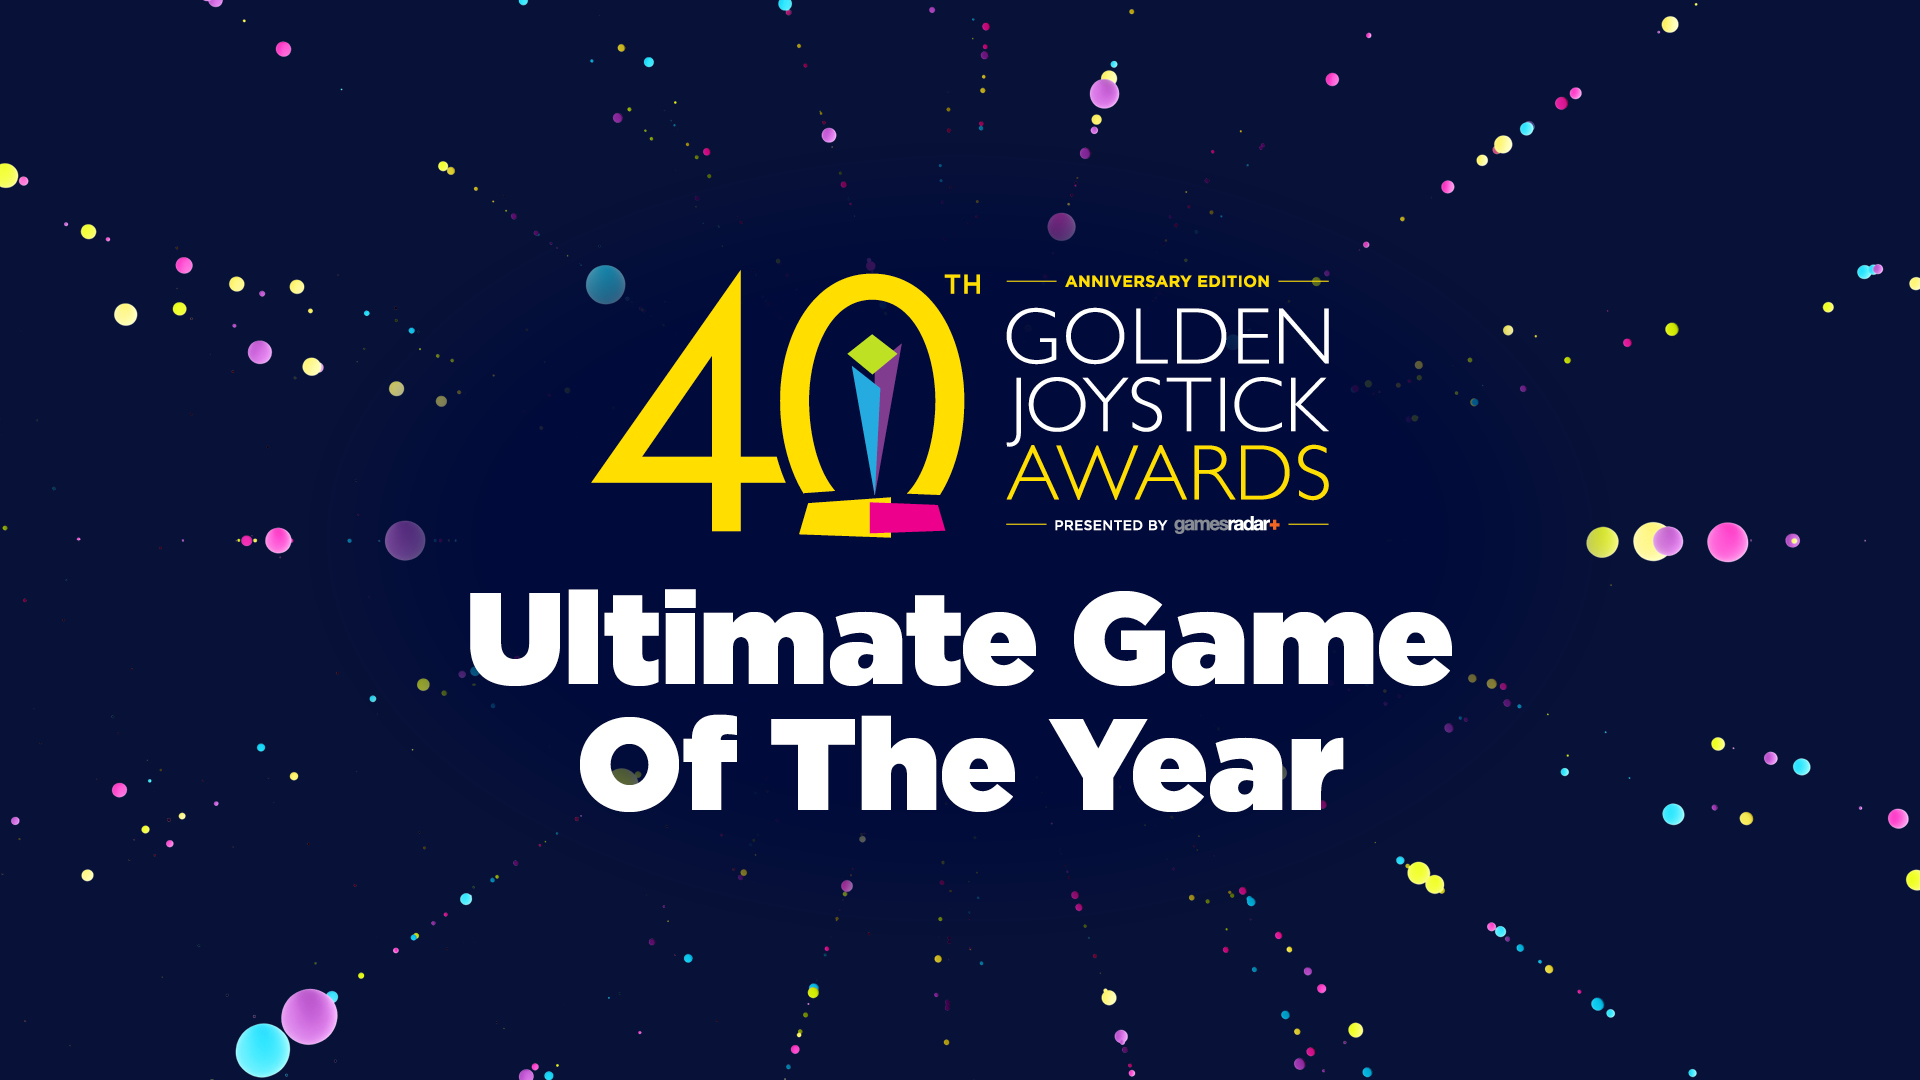 Golden Joystick Awards 2022 - confira todos os vencedores do evento